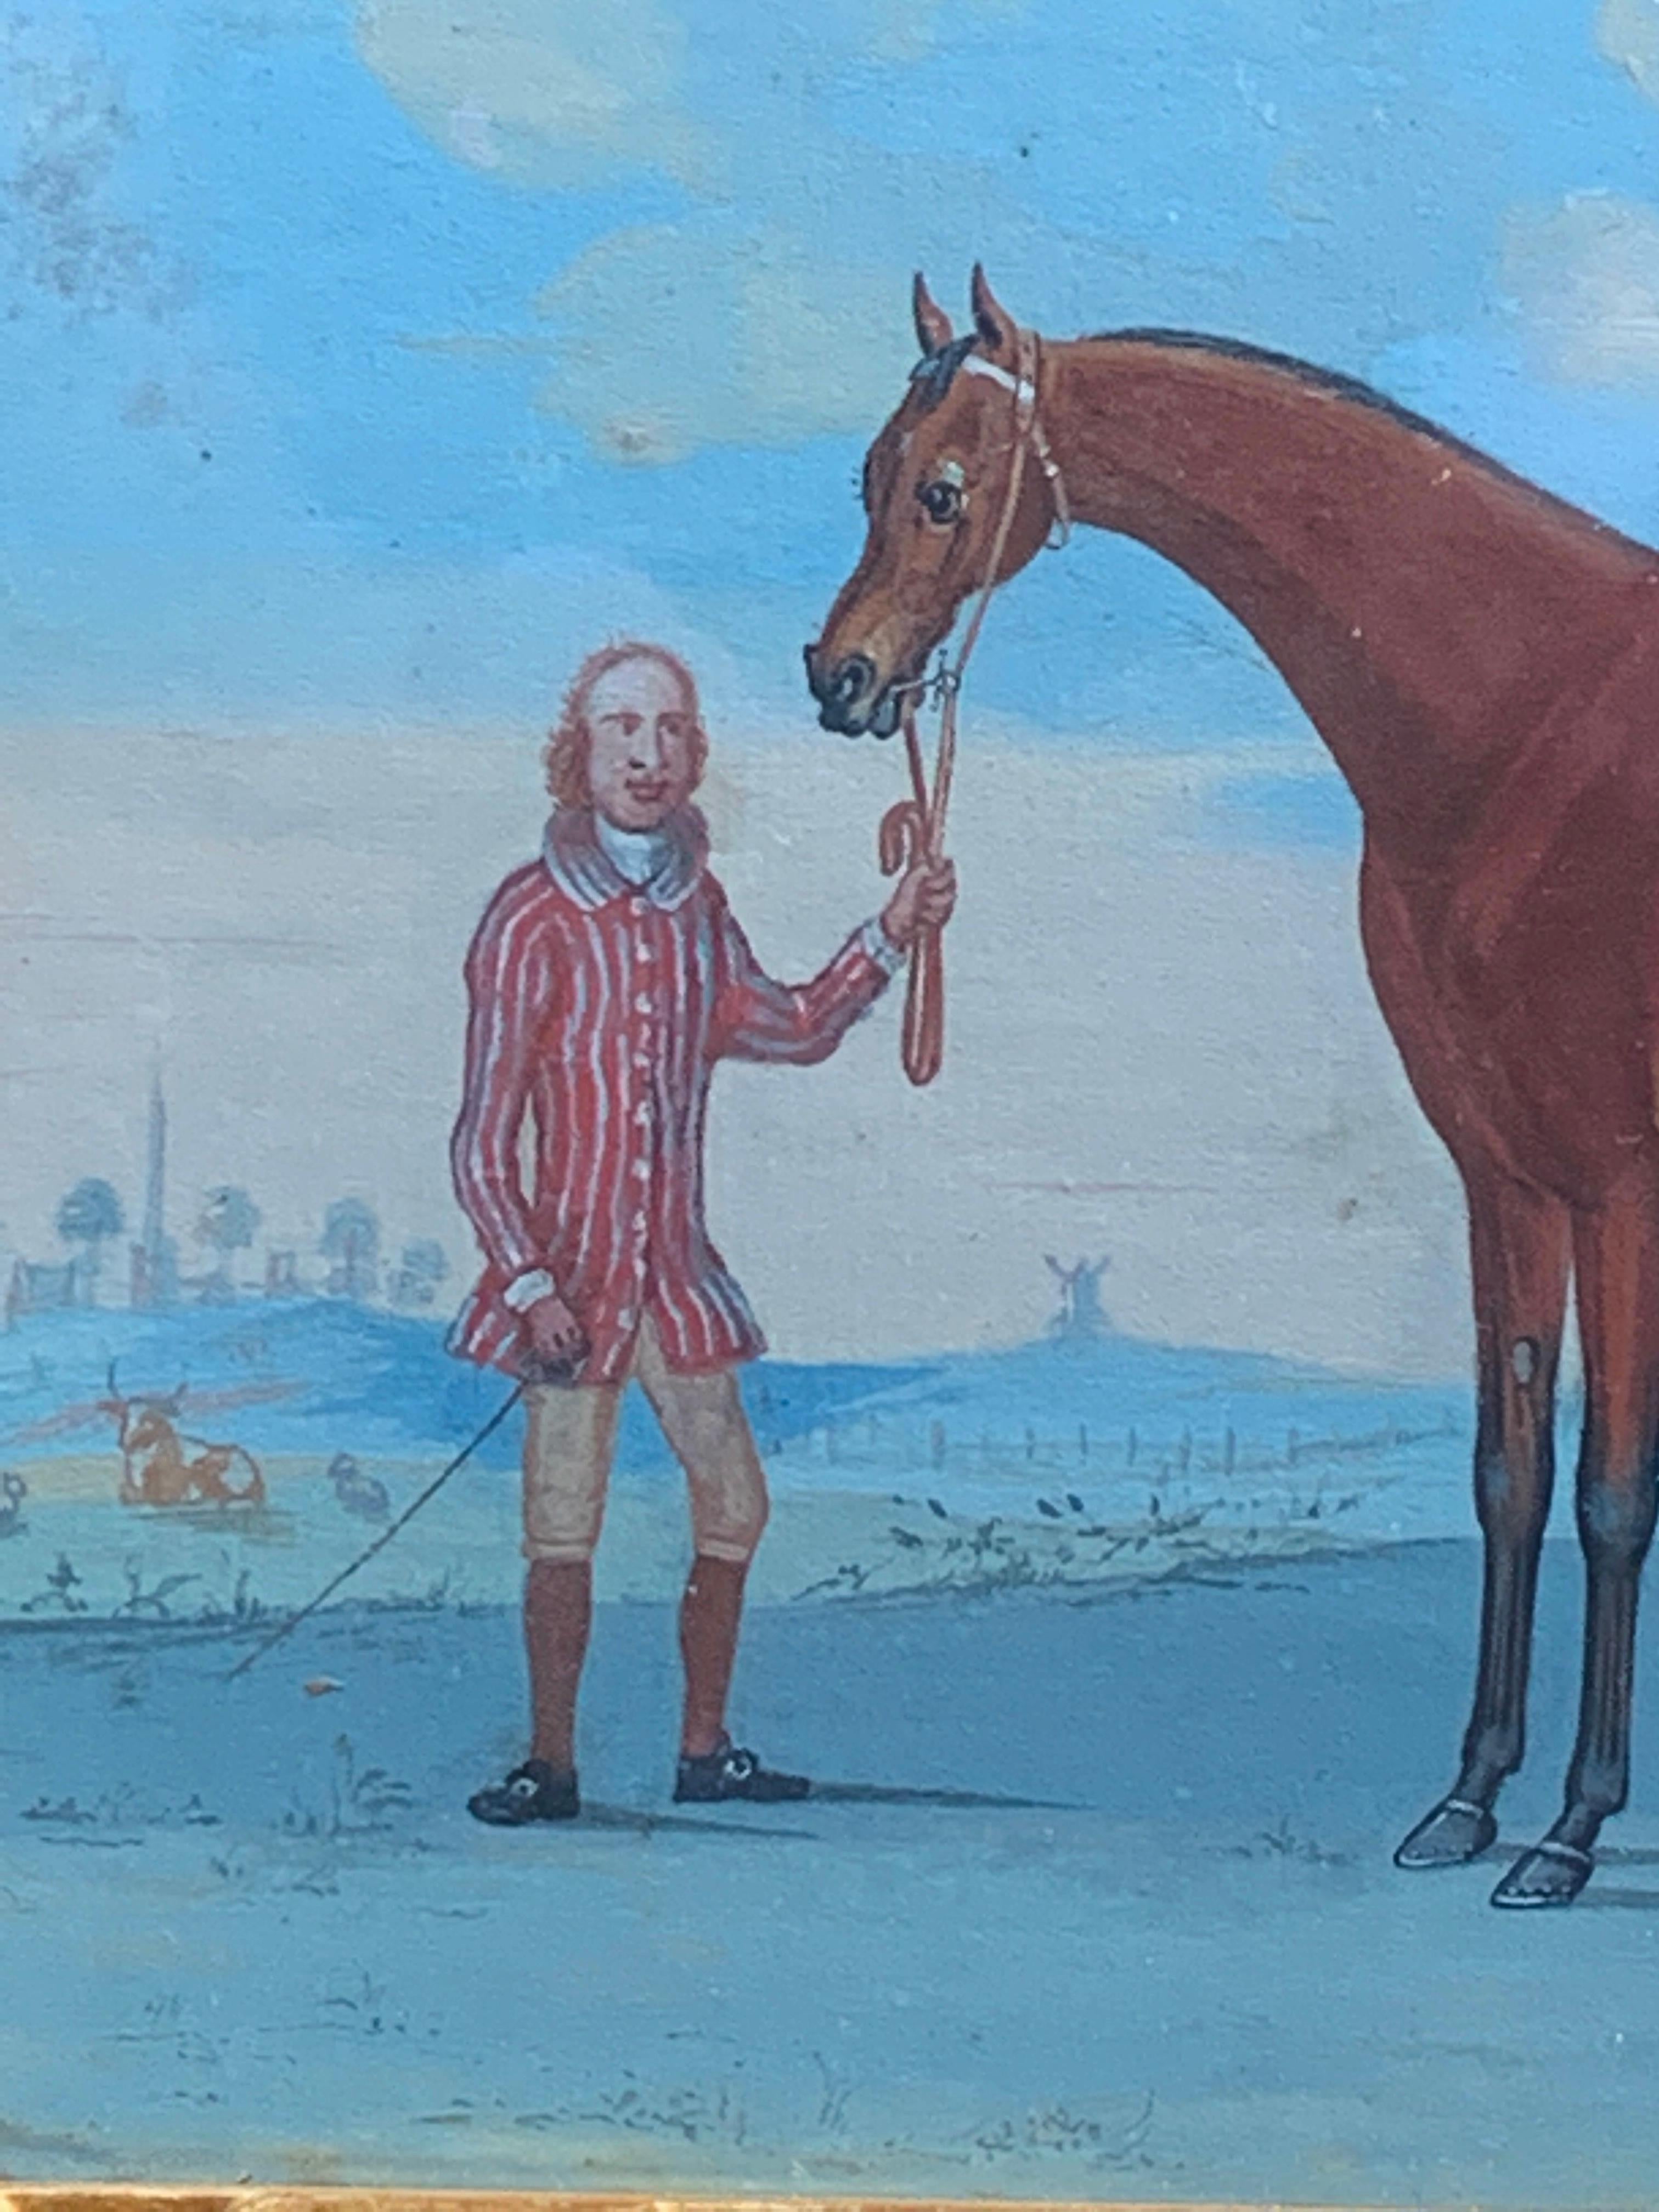 Merveilleuse gouache sur papier d'une scène anglaise du 18ème siècle représentant un palefrenier avec un cheval dans un paysage.

Un d'un ensemble de cinq, tous encadrés dans des cadres Hogarth. 

L.Green était membre d'une famille de peintres